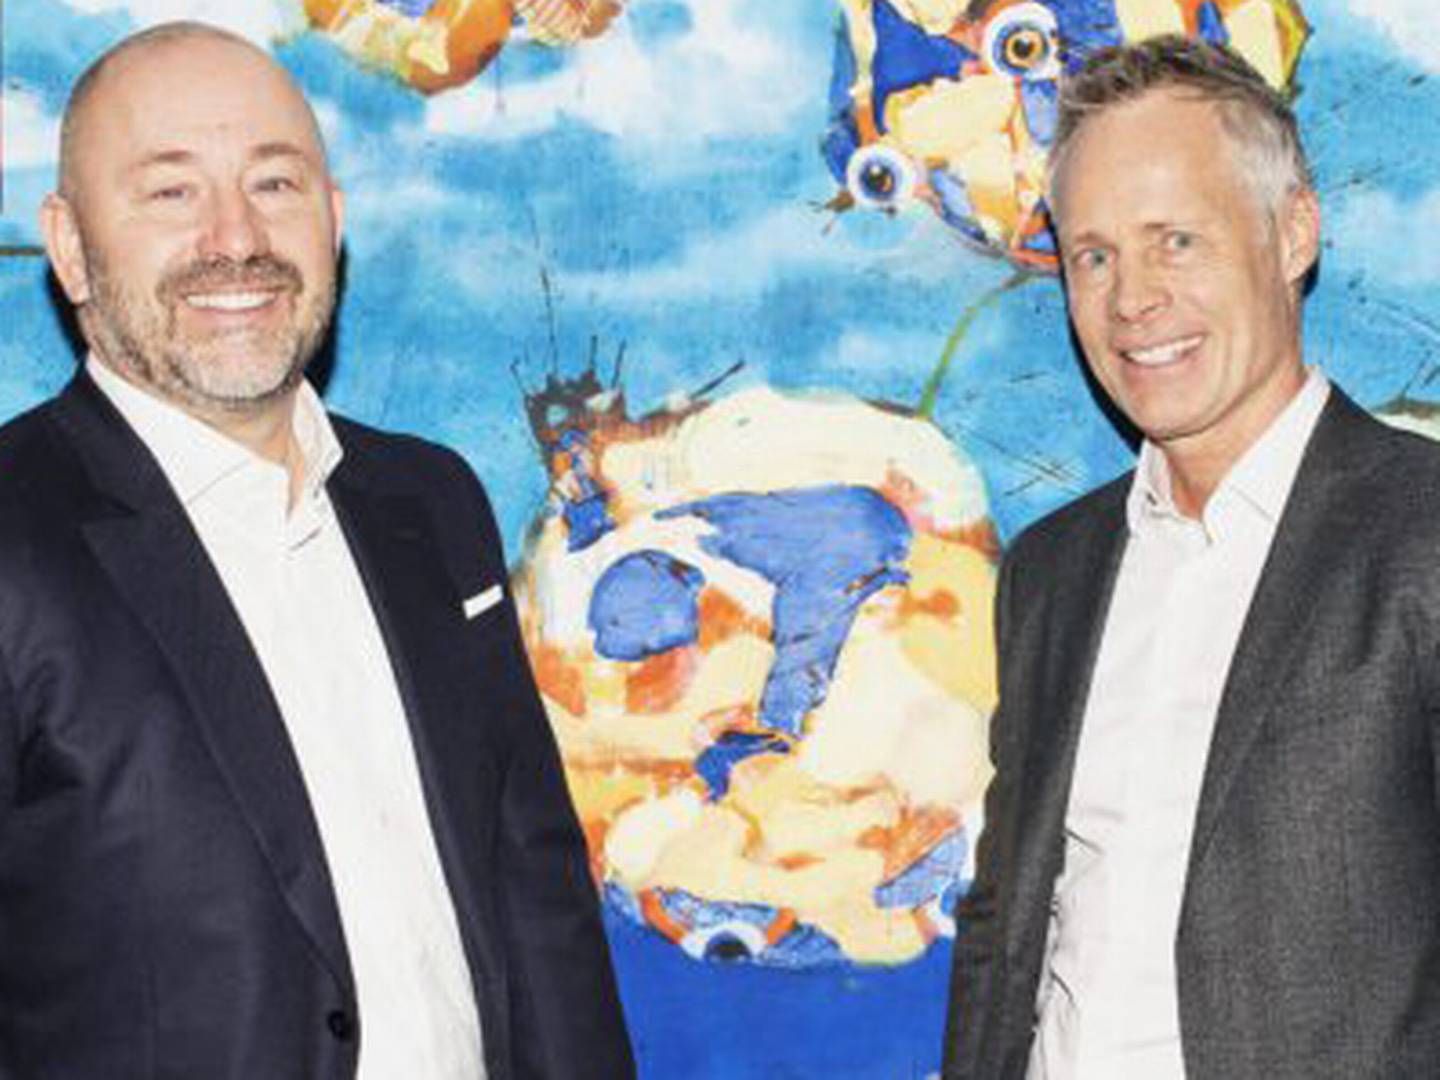 Artha blev grundlagt af Jan Severin Sølbæk (tv.) og Brian Kudsk i 2008 og er dermed otte år ældre end Scope Investment, som man nu fusioneres med. | Foto: PR / Mie Hee Christensen